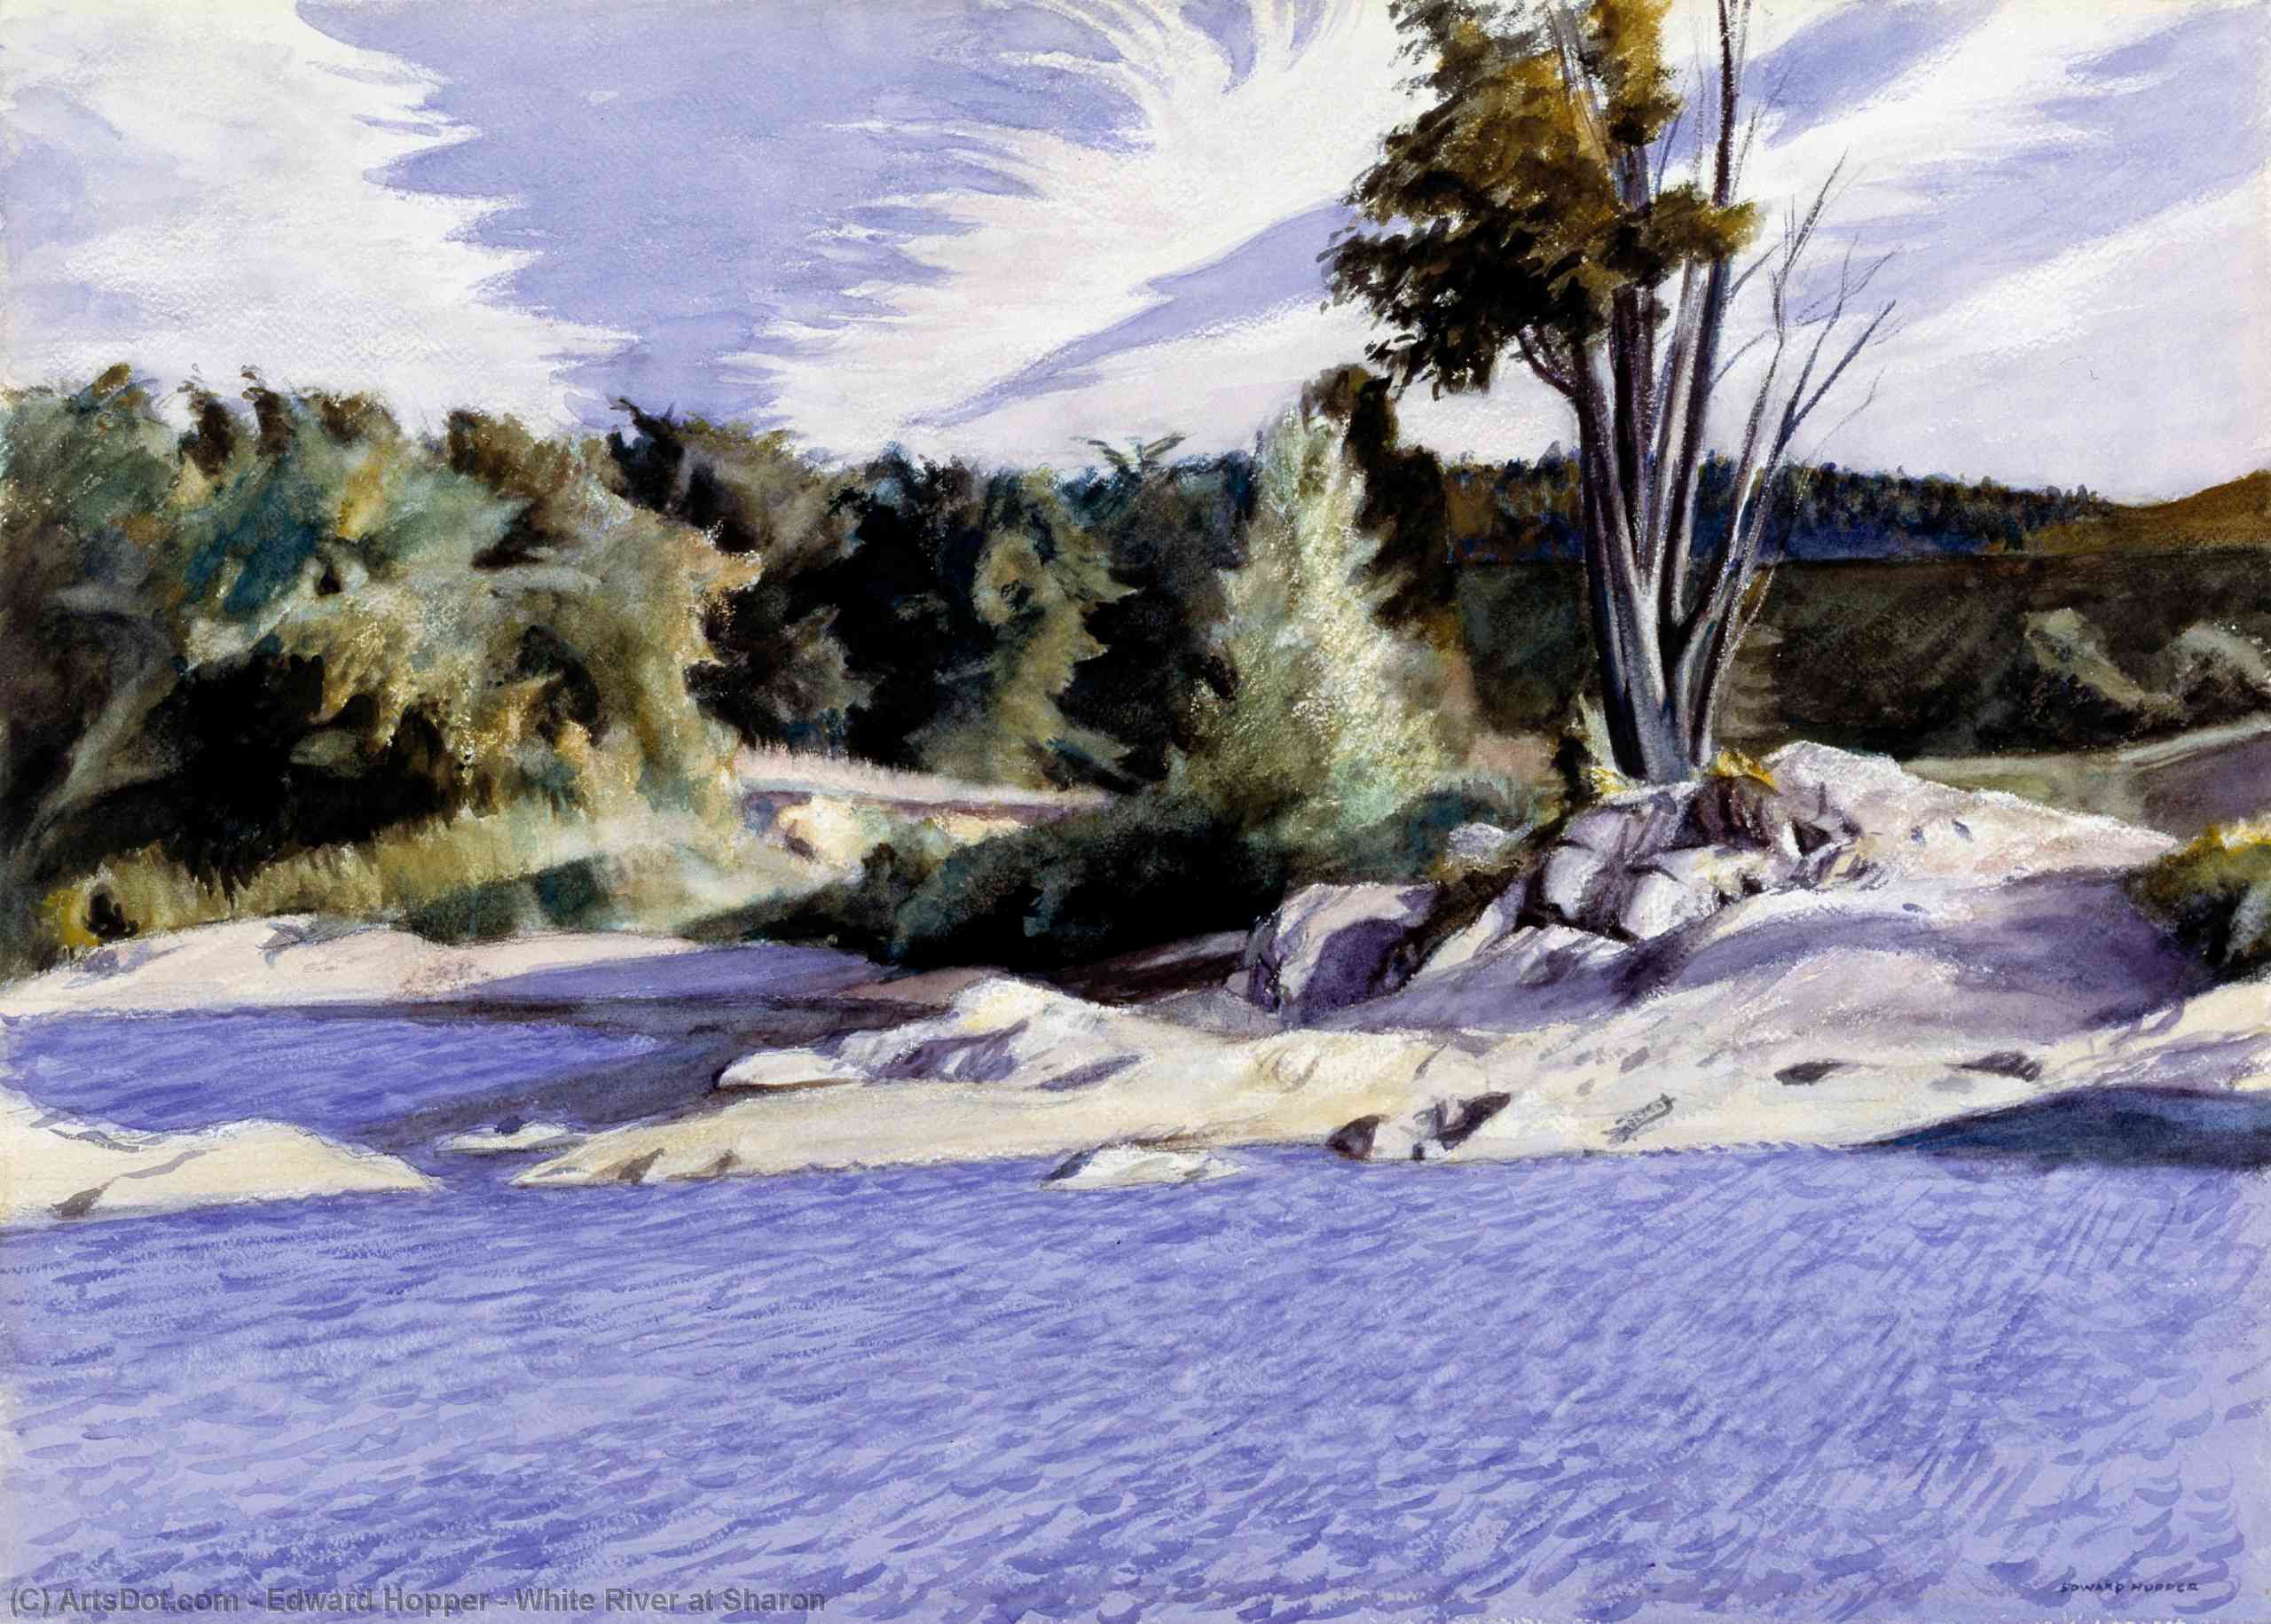 Wikioo.org - Bách khoa toàn thư về mỹ thuật - Vẽ tranh, Tác phẩm nghệ thuật Edward Hopper - White River at Sharon